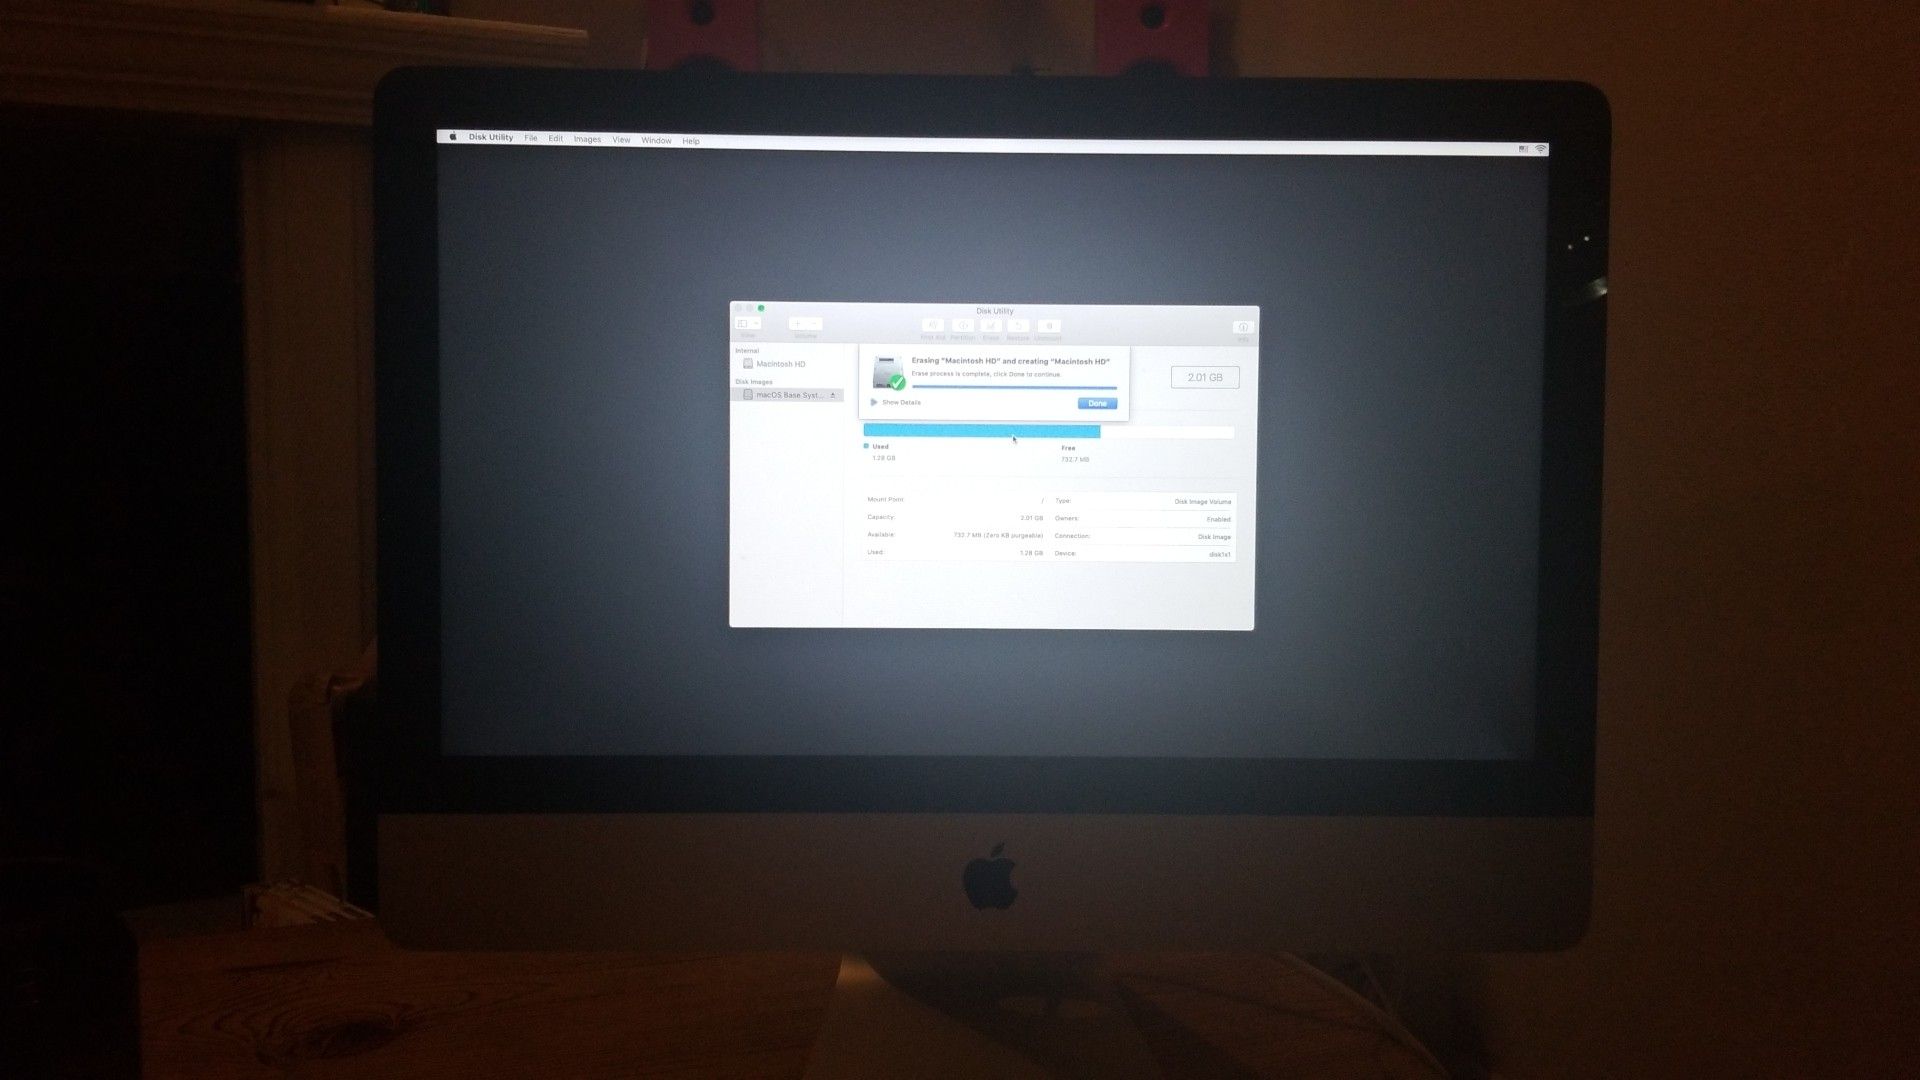 iMac 21.5-inch LED-backlit display